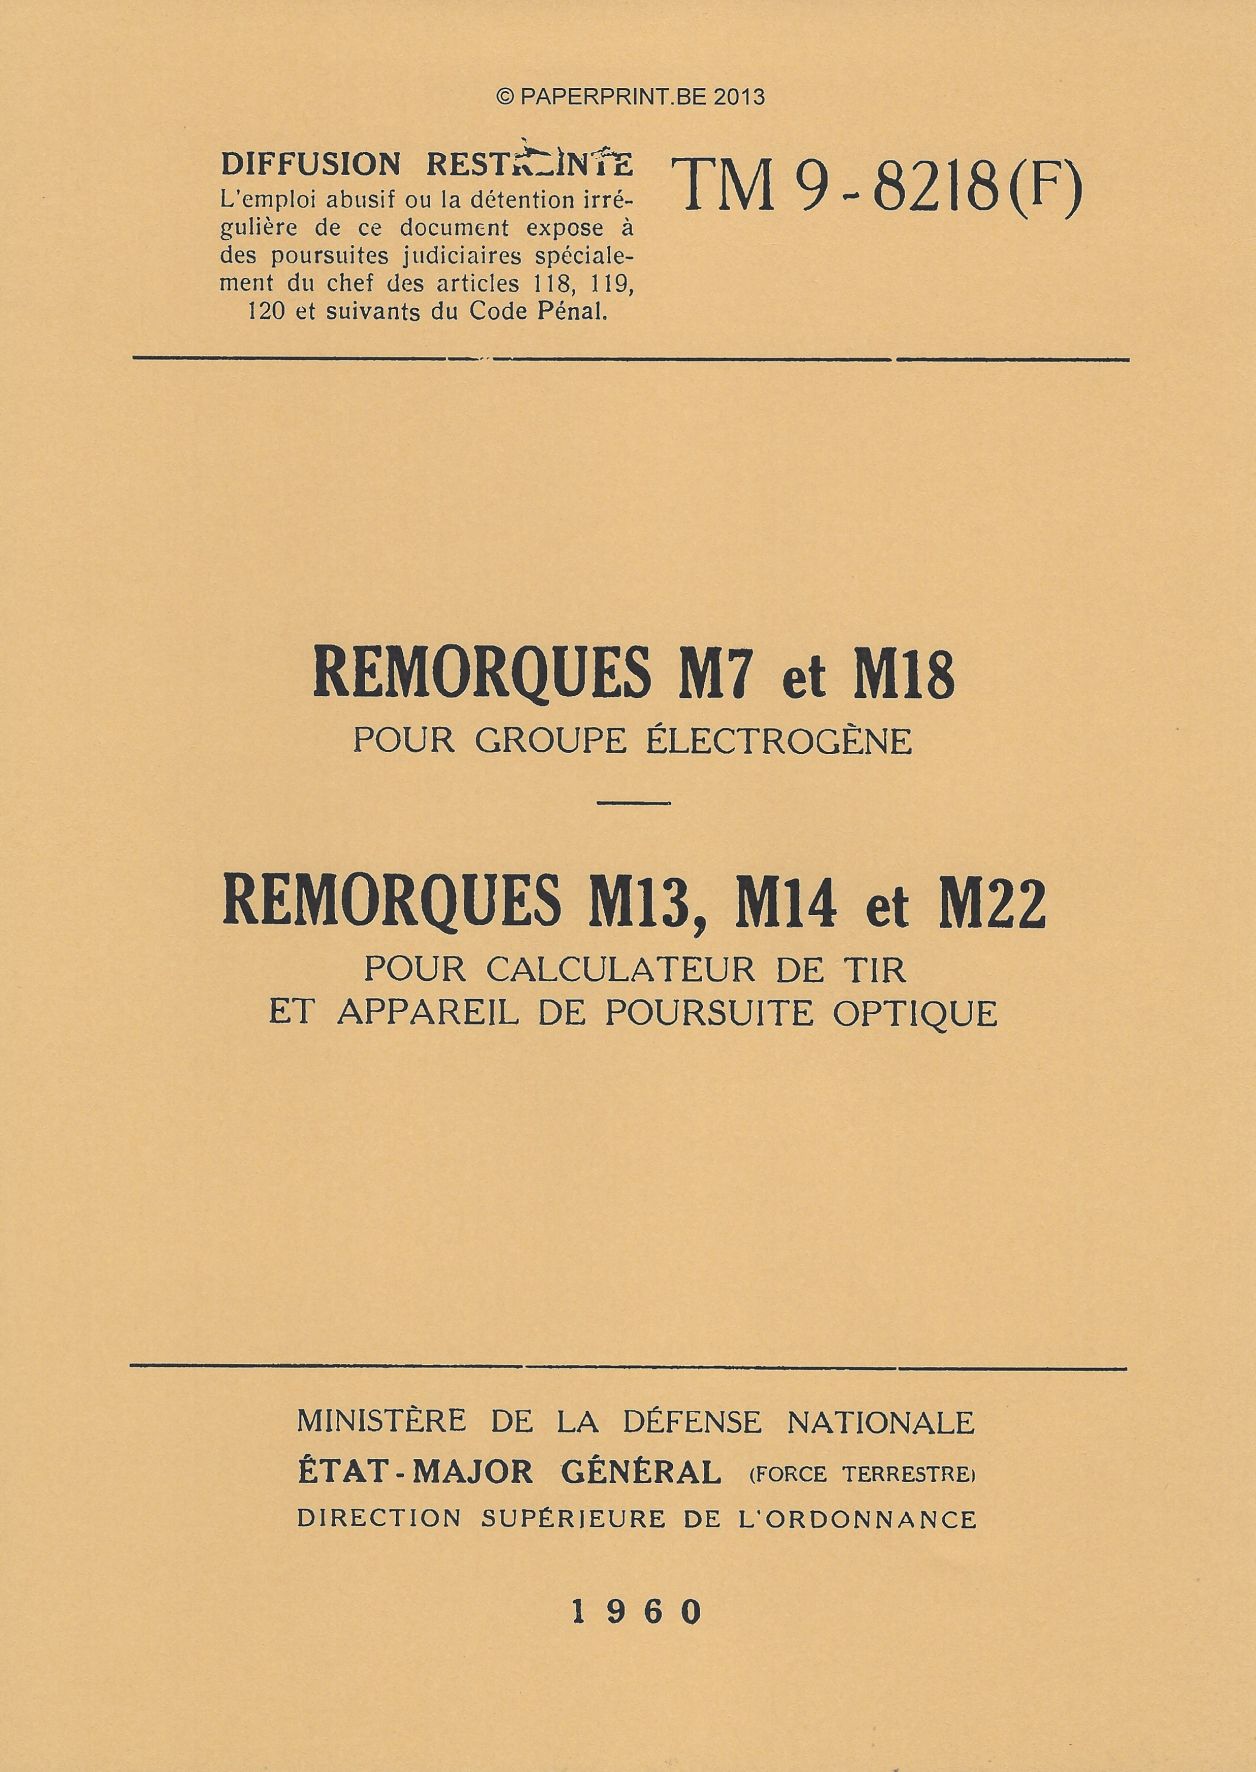 TM 9-8218 FR REMORQUES M7, M18, M13, M14 ET M22